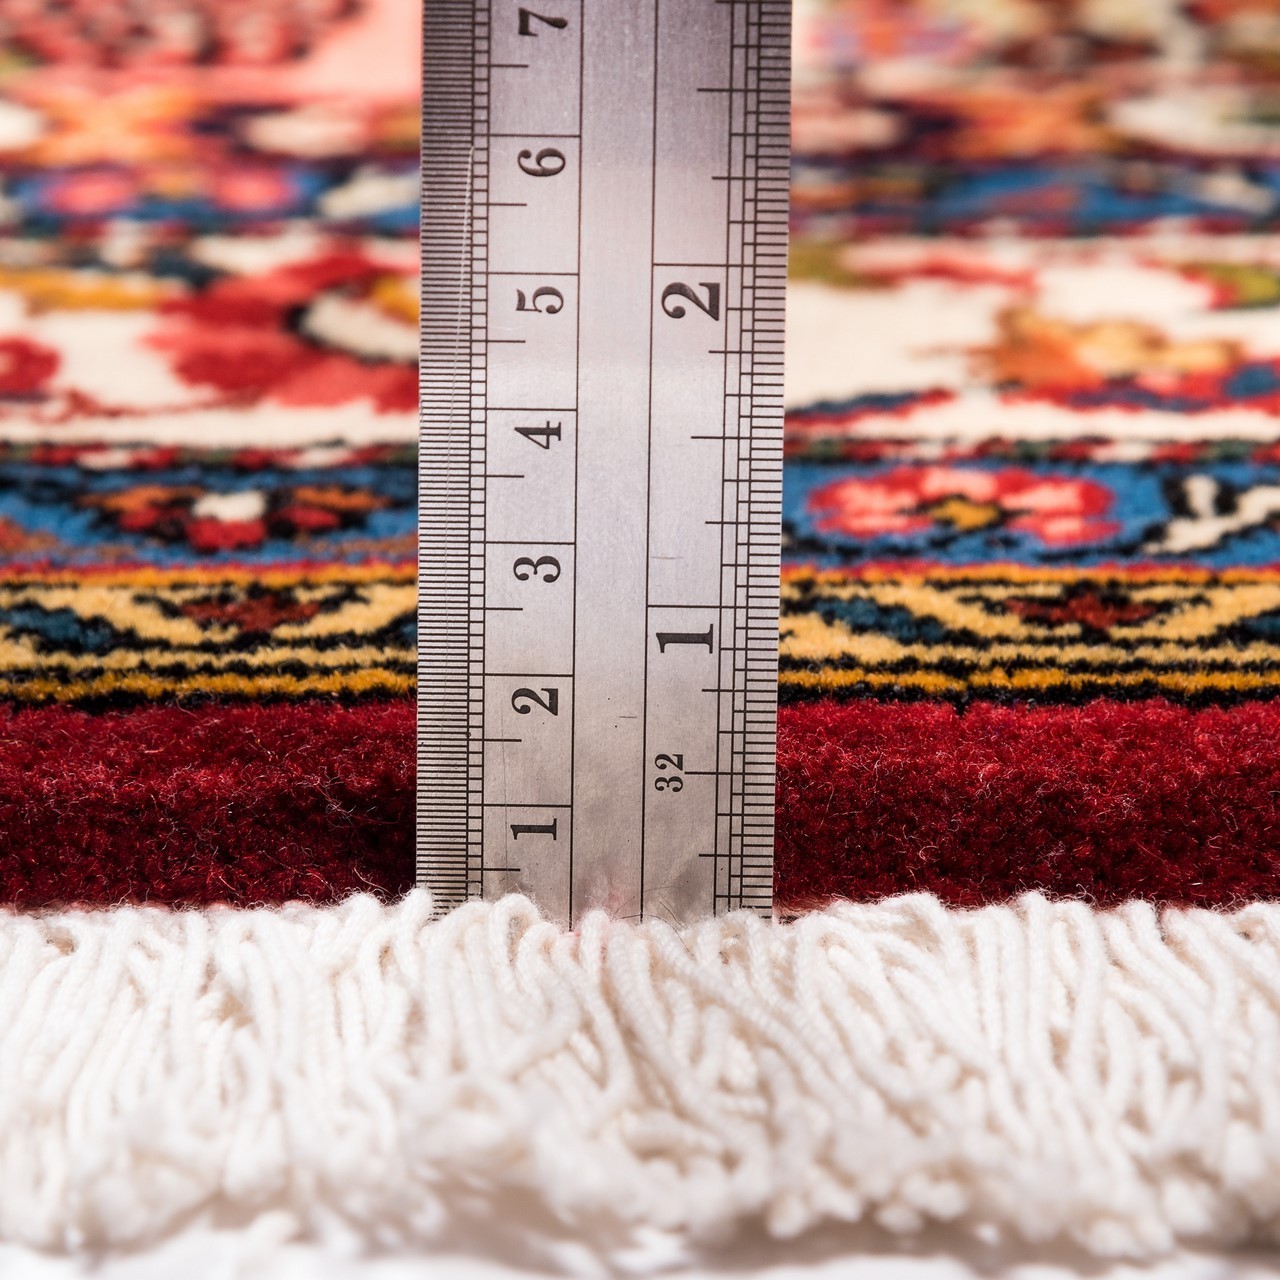 handgeknüpfter persischer Teppich. Ziffer 162043